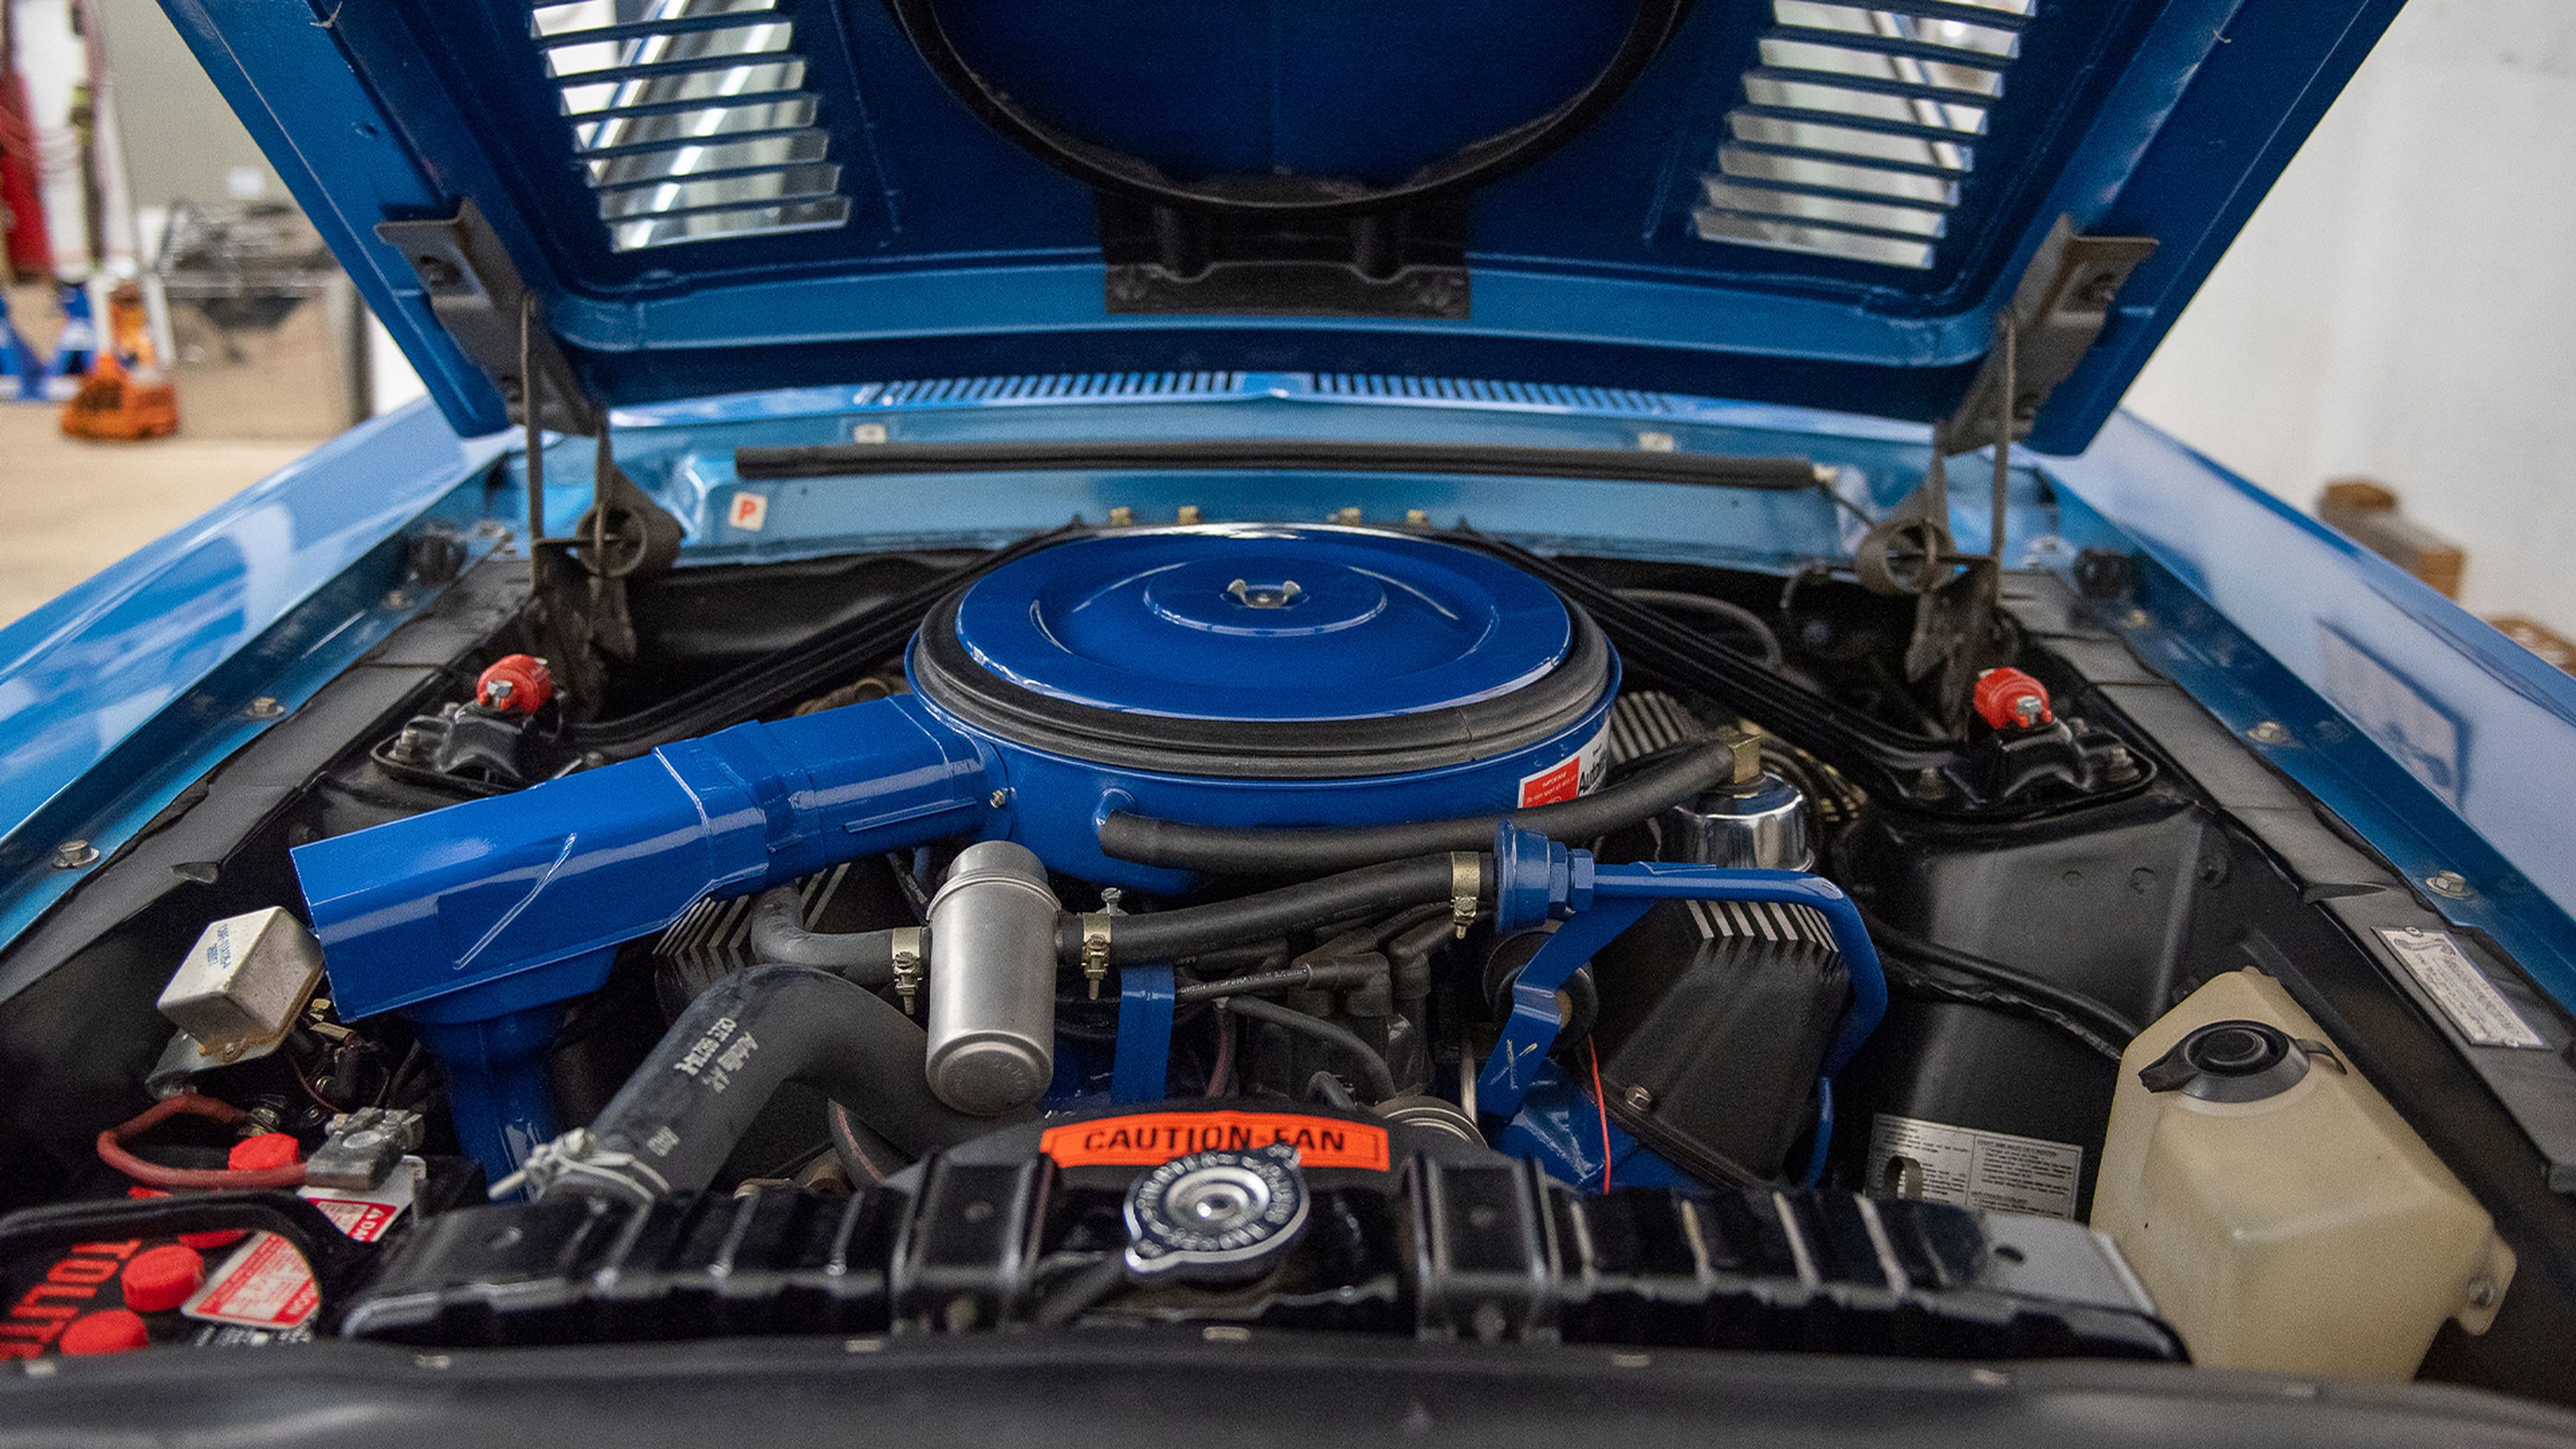 Motor Ford V8 428 modificado por Shelby en un GT500 KR del 68'.